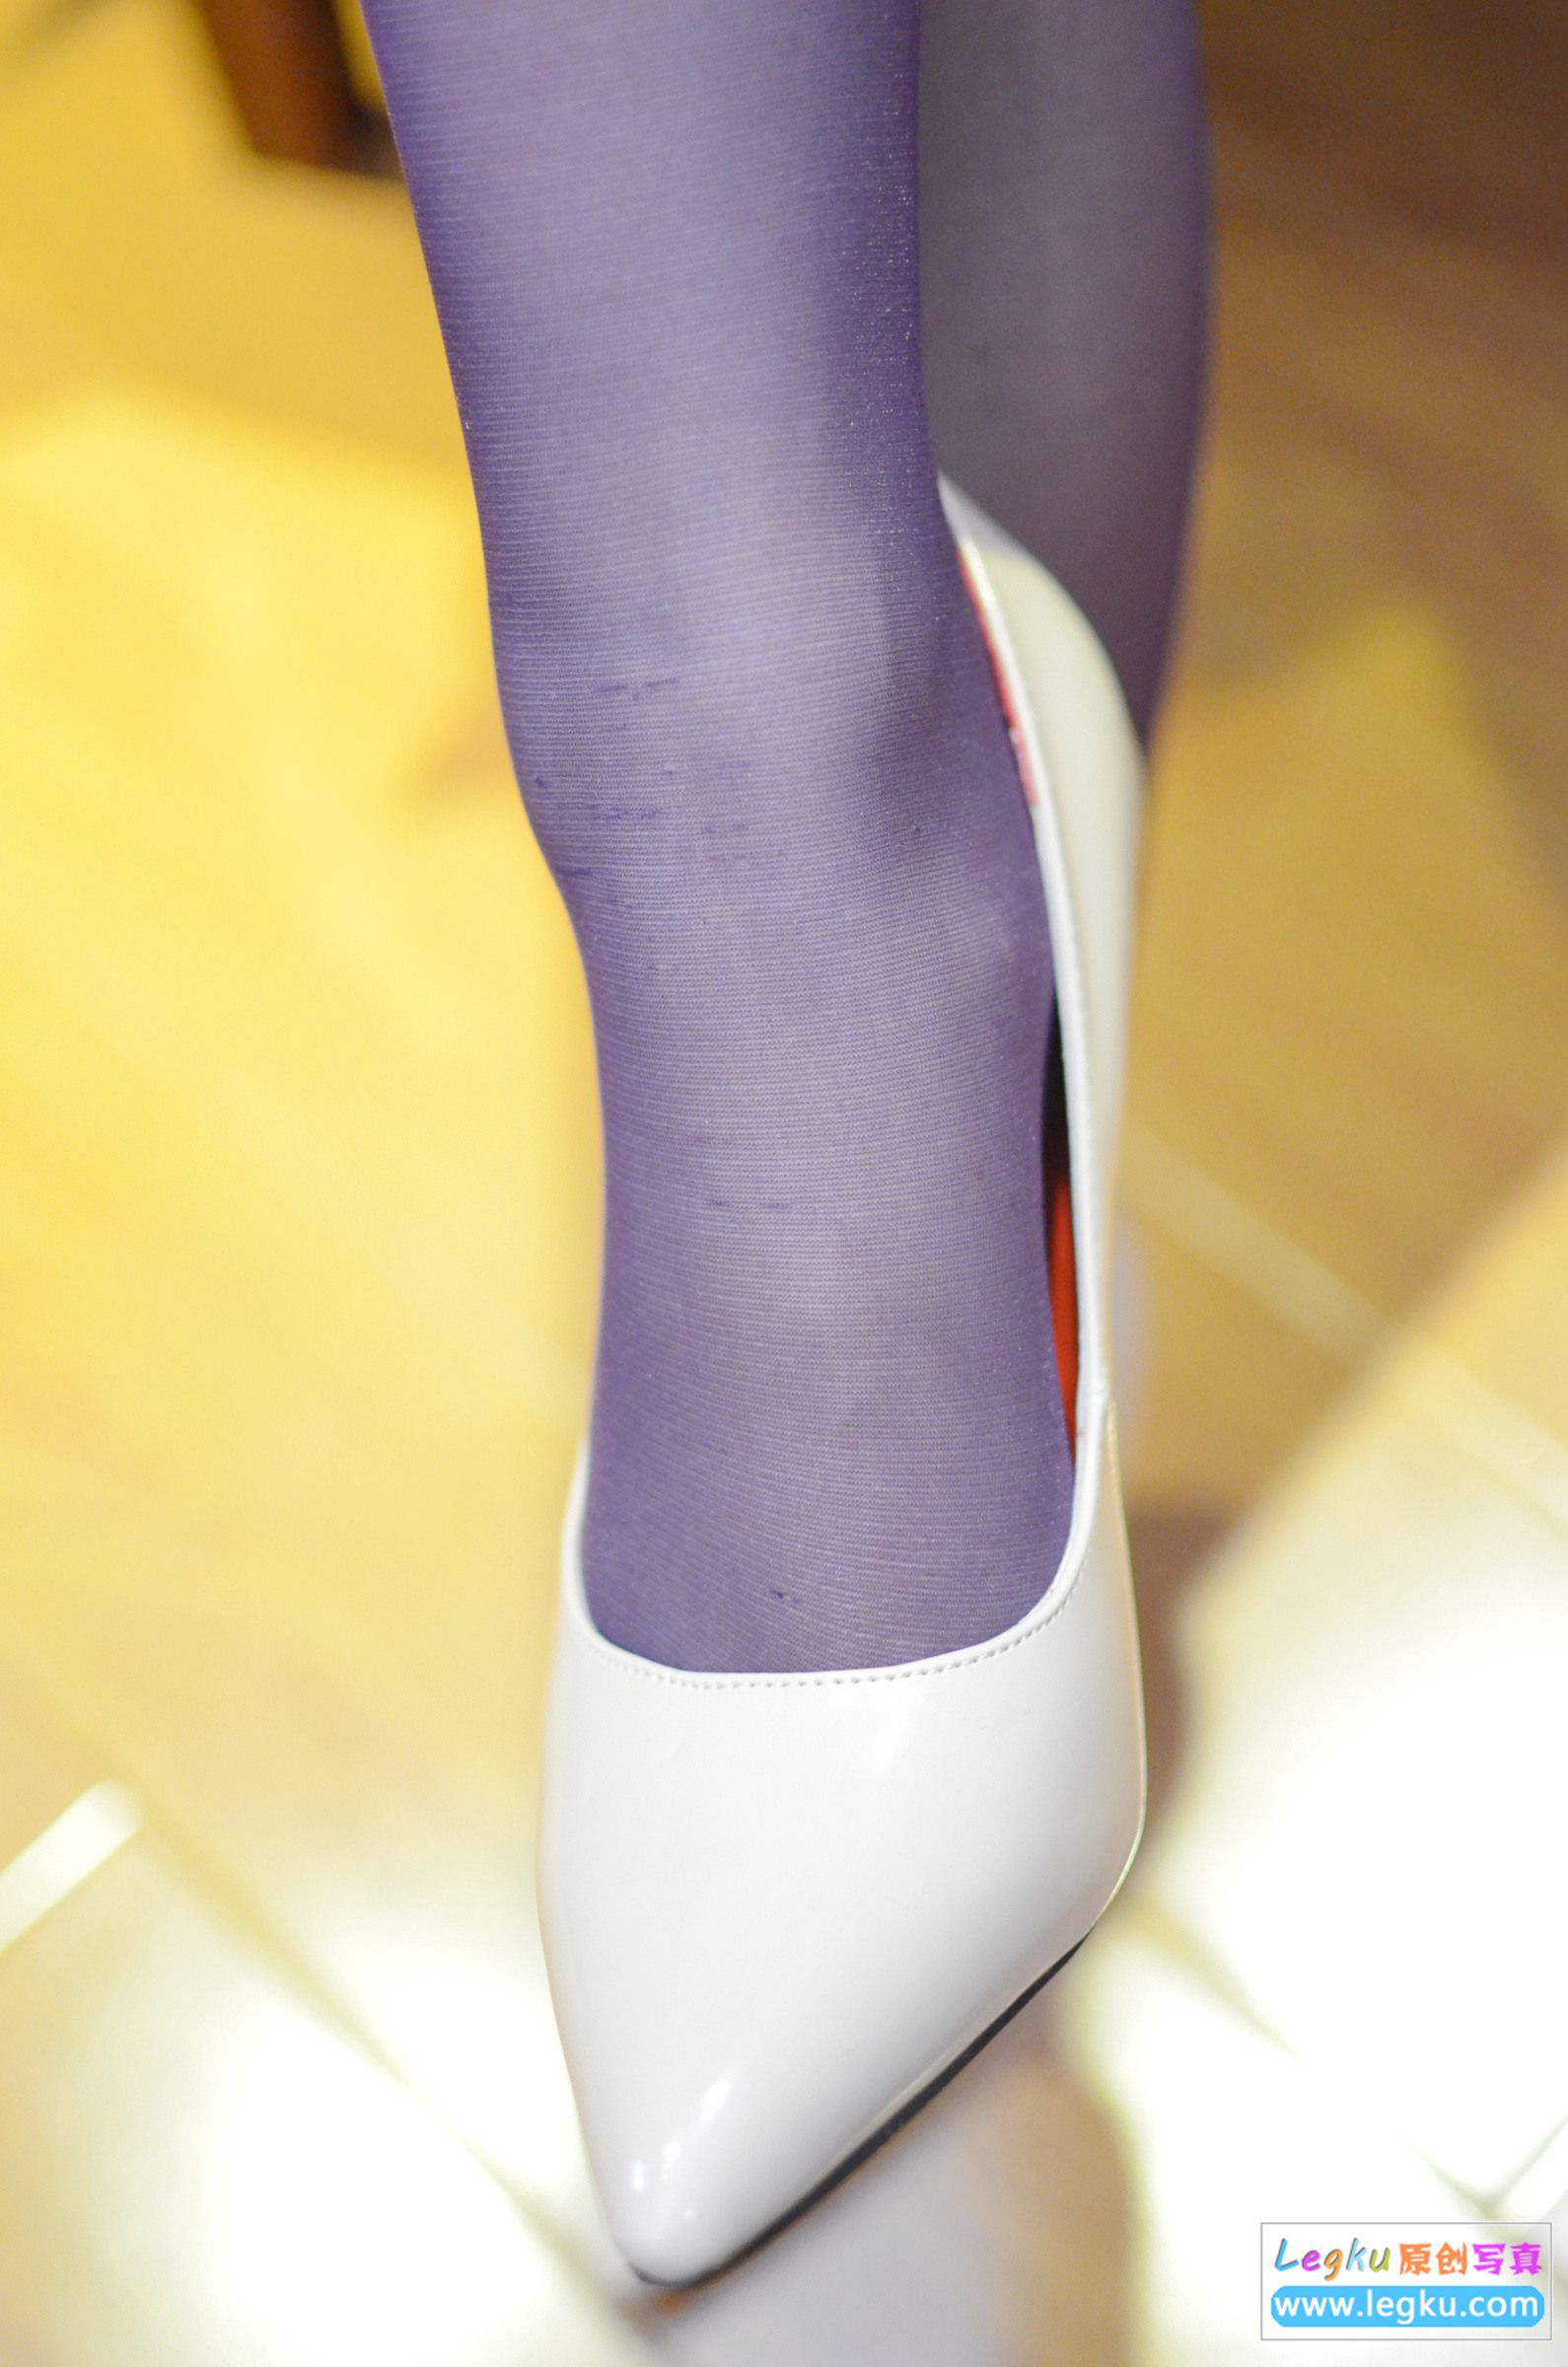 [Legku丝袜] No.225 紫色丝袜丝足高跟 写真套图2 